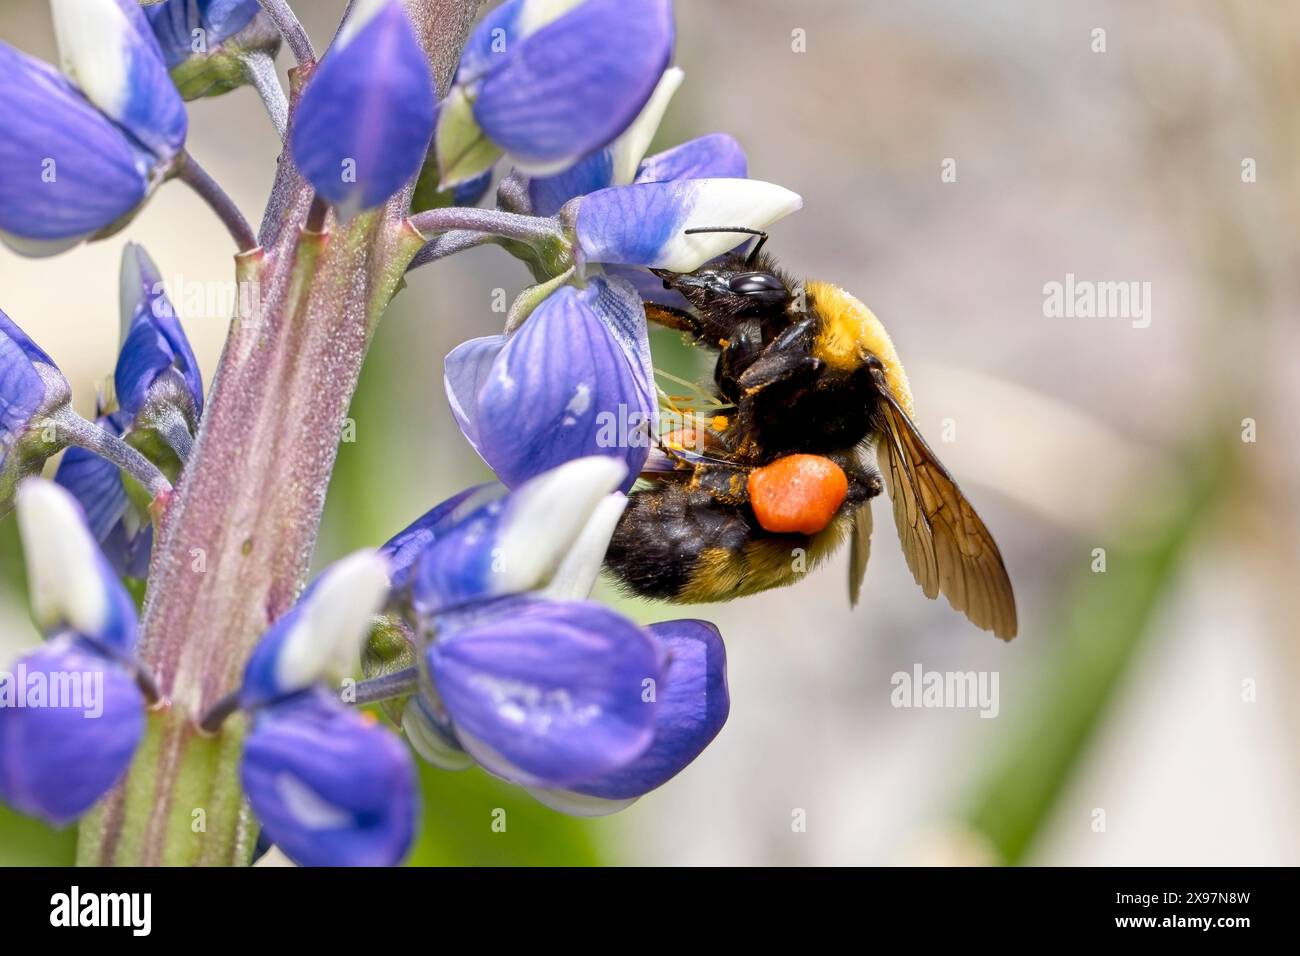 Una foto ravvicinata di un calabrone con cintura arancione che raccoglie polline dai fiori dell'Idaho settentrionale. Foto Stock